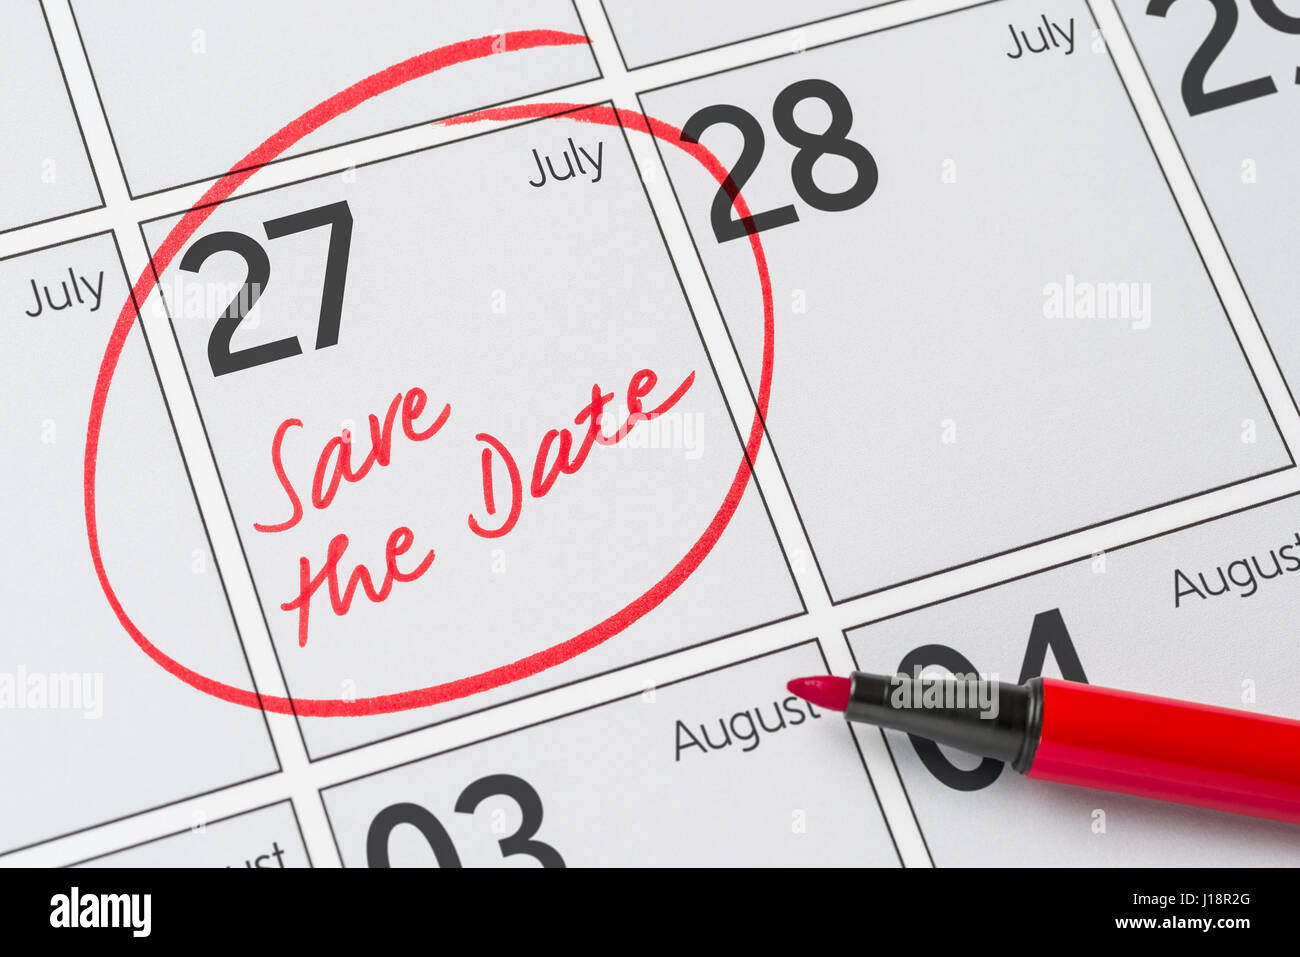 Enregistrer la date inscrite sur un calendrier - Juillet 27 Banque D'Images